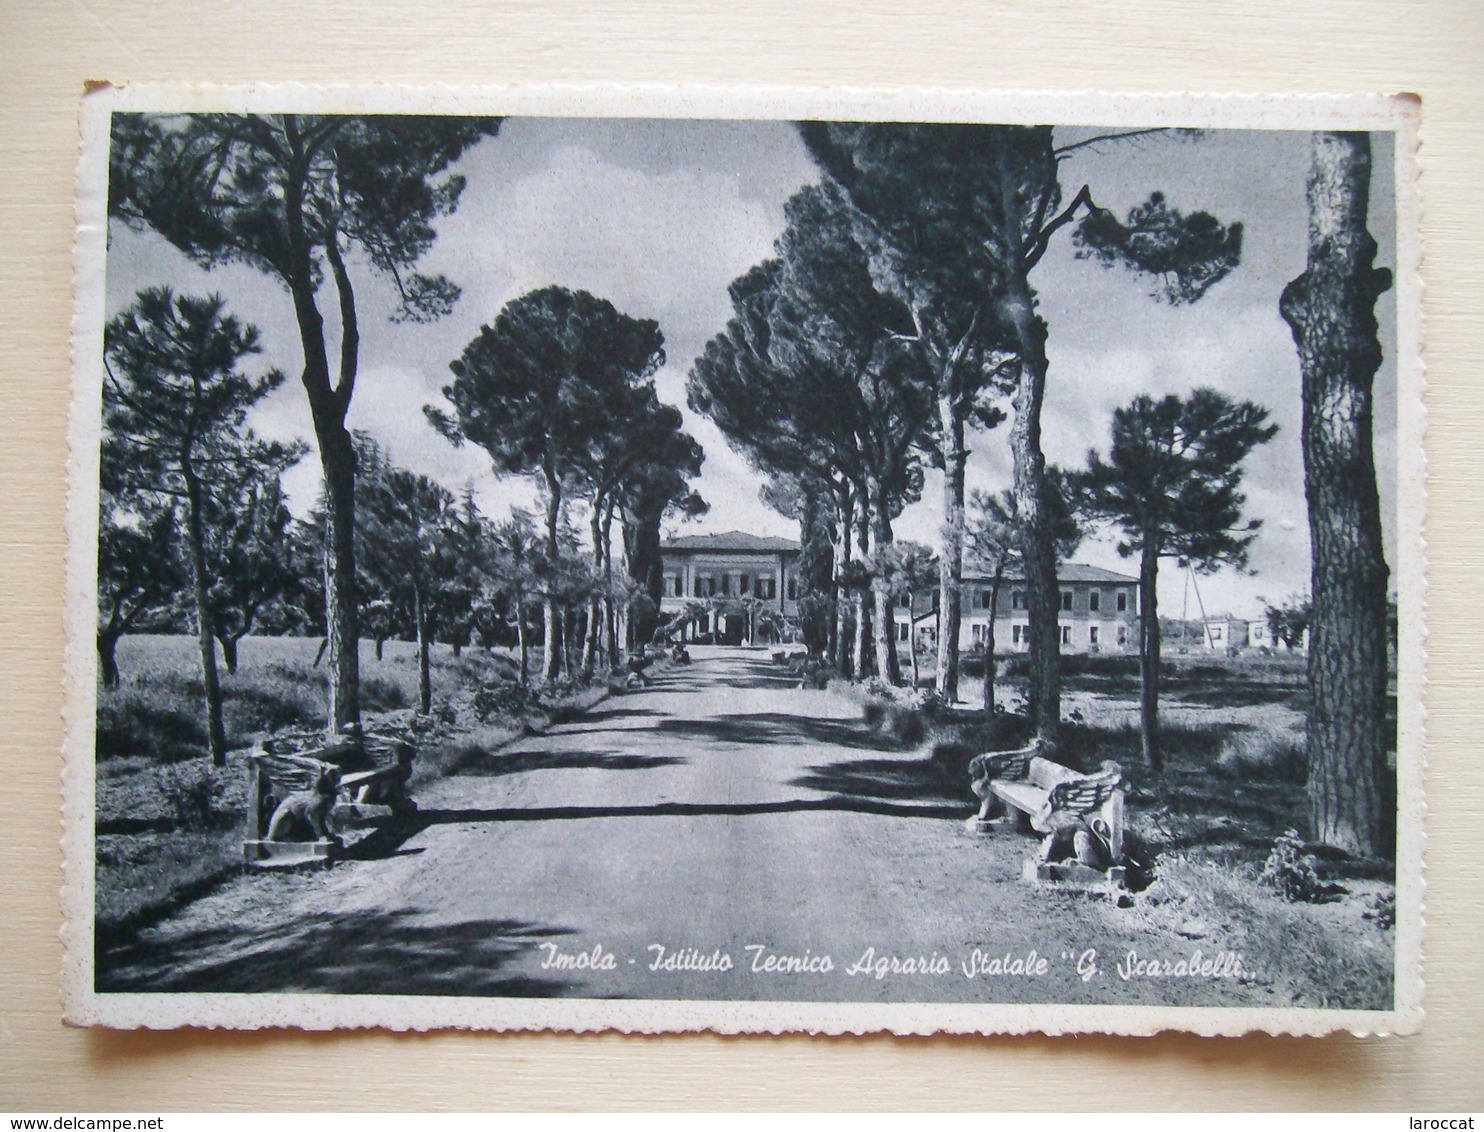 1957 - Imola - Istituto Tecnico Agrario G. Scarabelli -  Cartolina Storica Originale Firmata Dal Grande Angelo Banzola - Imola